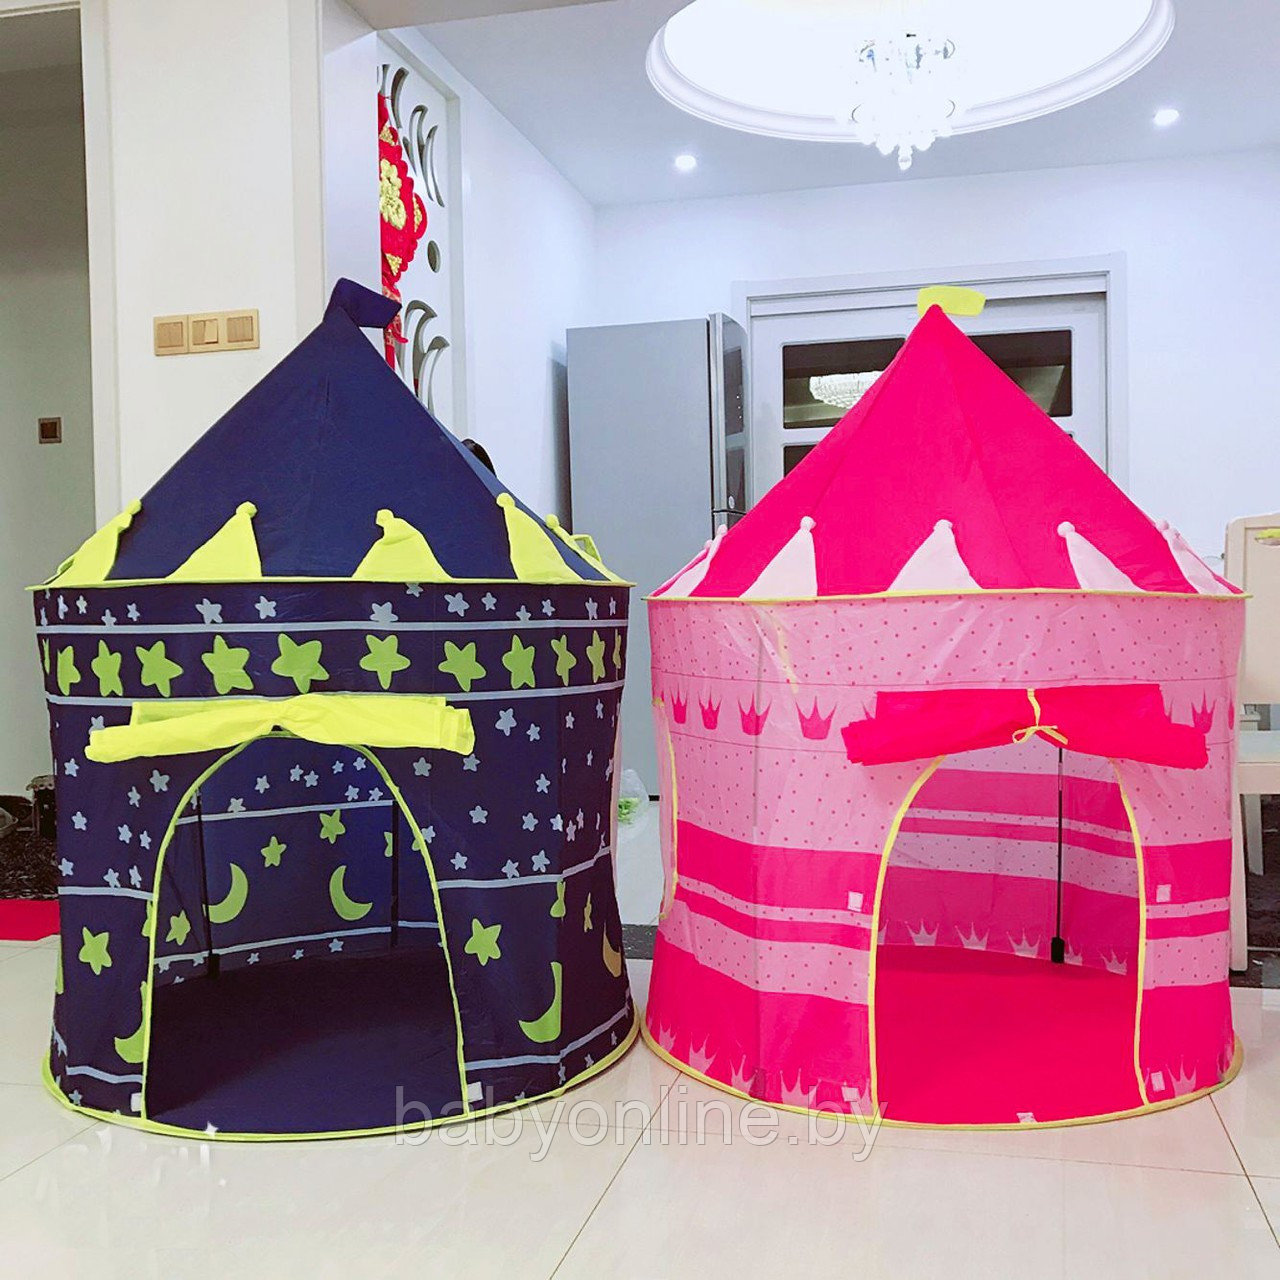 Детская палатка игровая Замок арт RE1102P цвет розовый